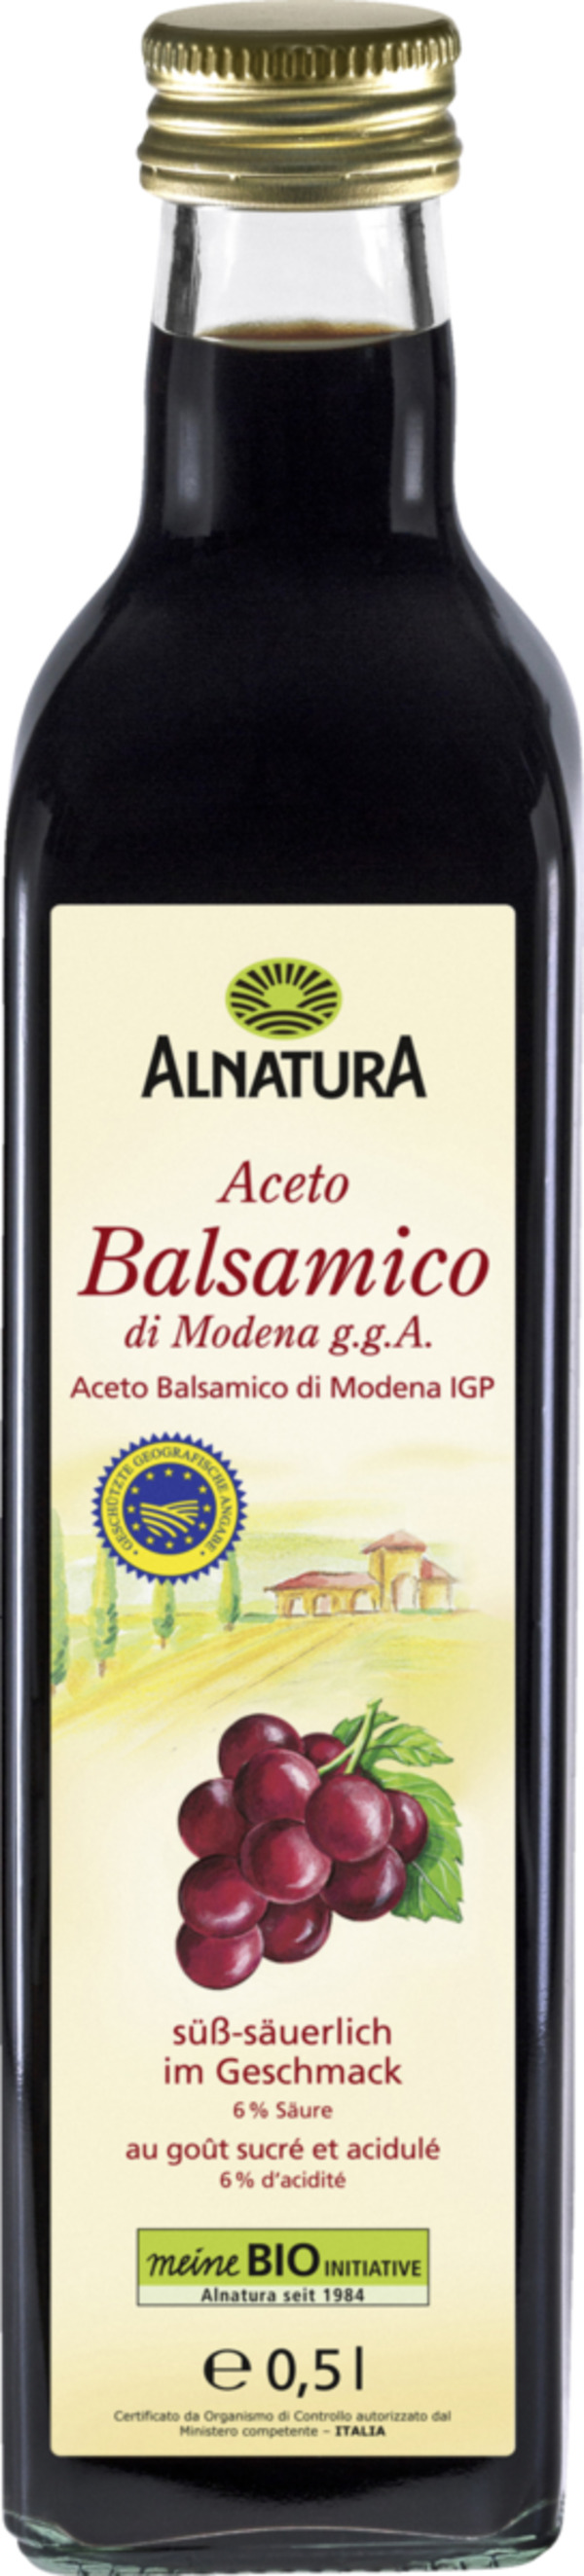 Bild 1 von Alnatura Bio Aceto Balsamico di Modena